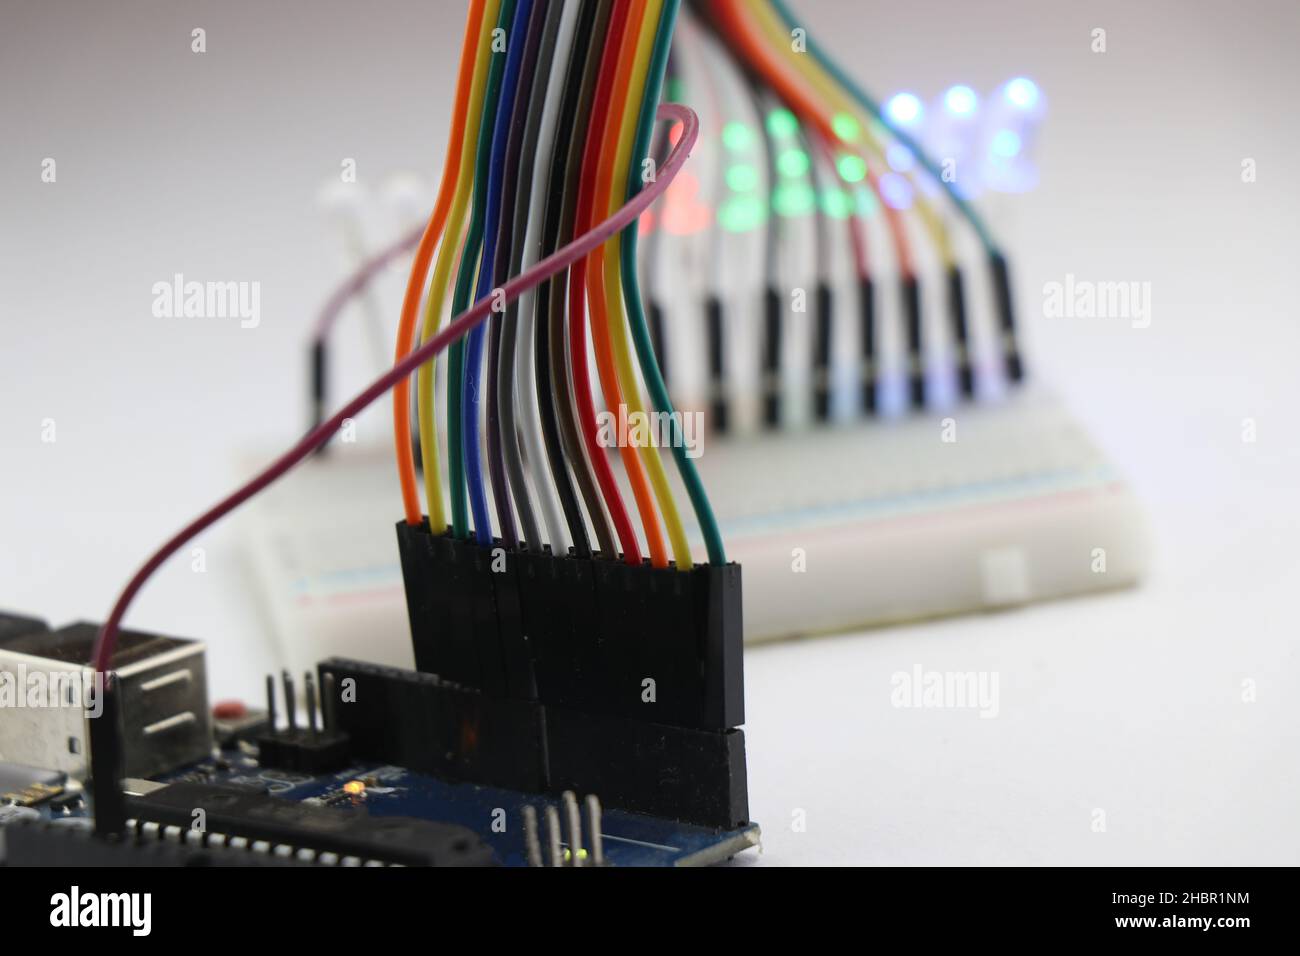 Jeu de cavaliers connectés à une carte de microcontrôleur qui complète le circuit avec une carte à puce et une LED montrant des projets électroniques de prototypage Banque D'Images